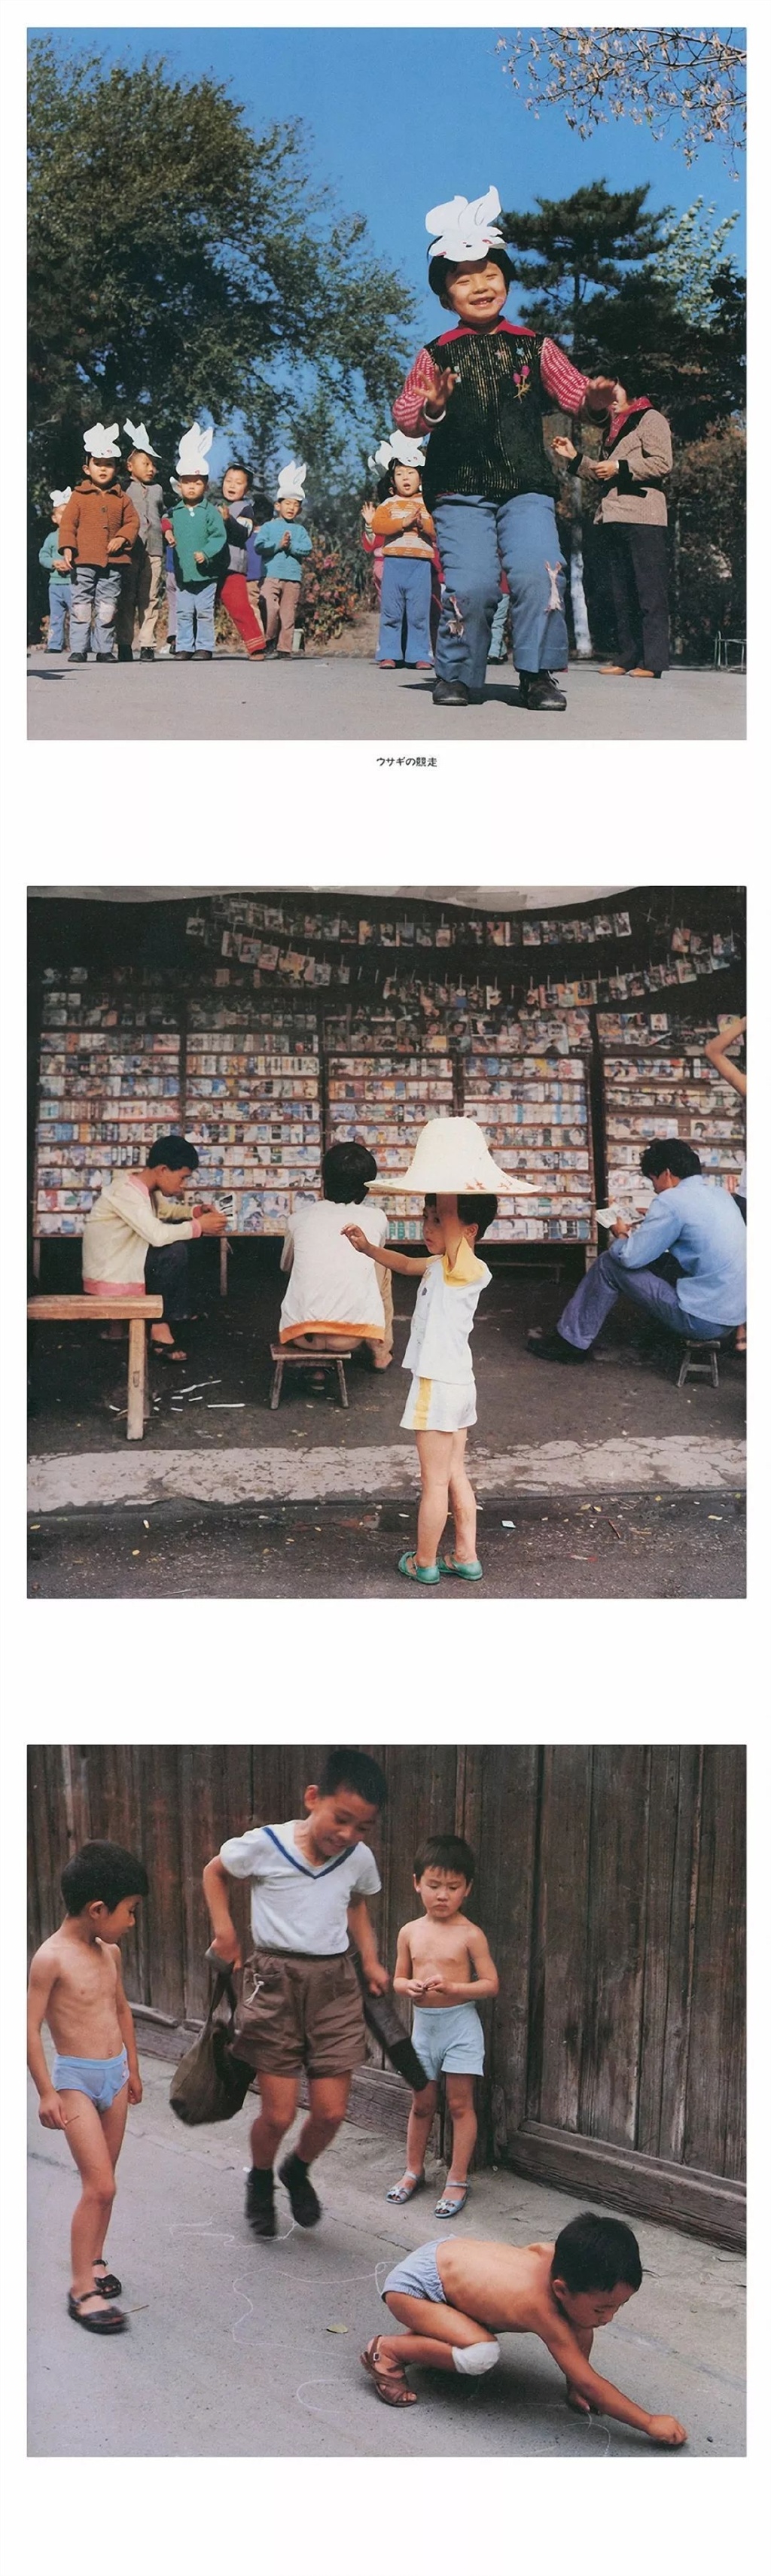 摄影师秋山亮二1983年作品《你好小朋友》